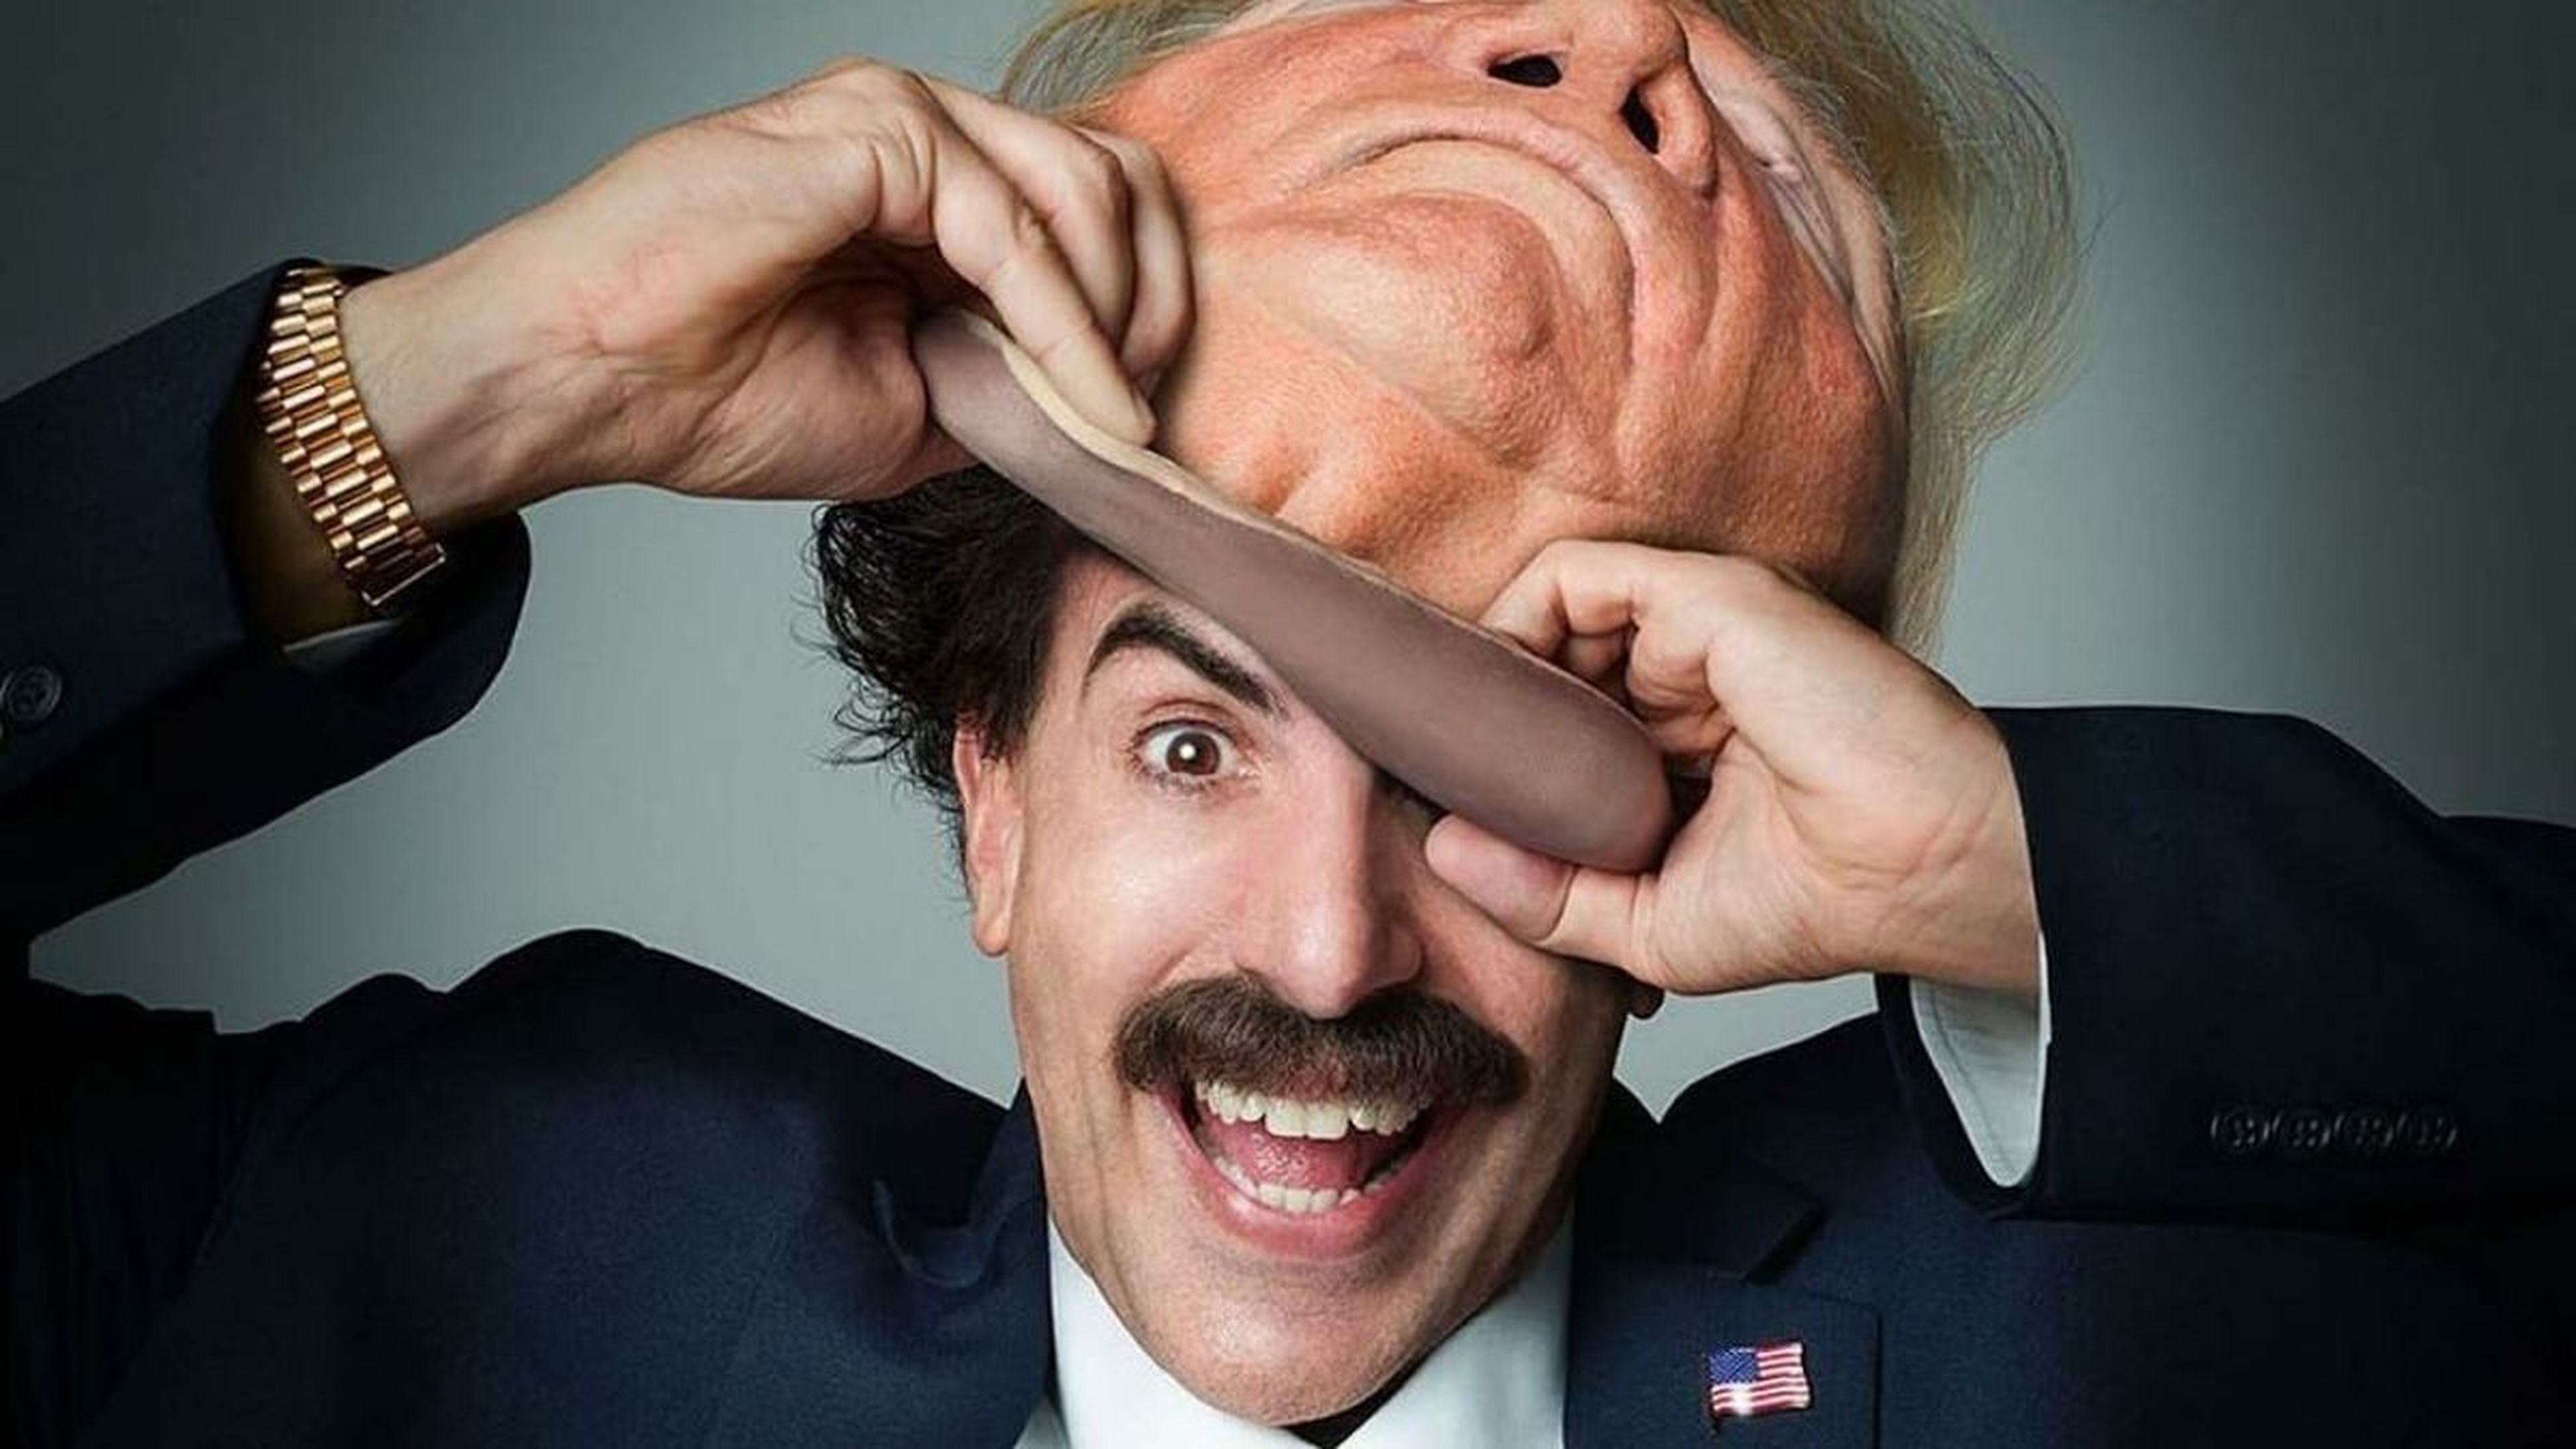 Borat: Subsequent Film